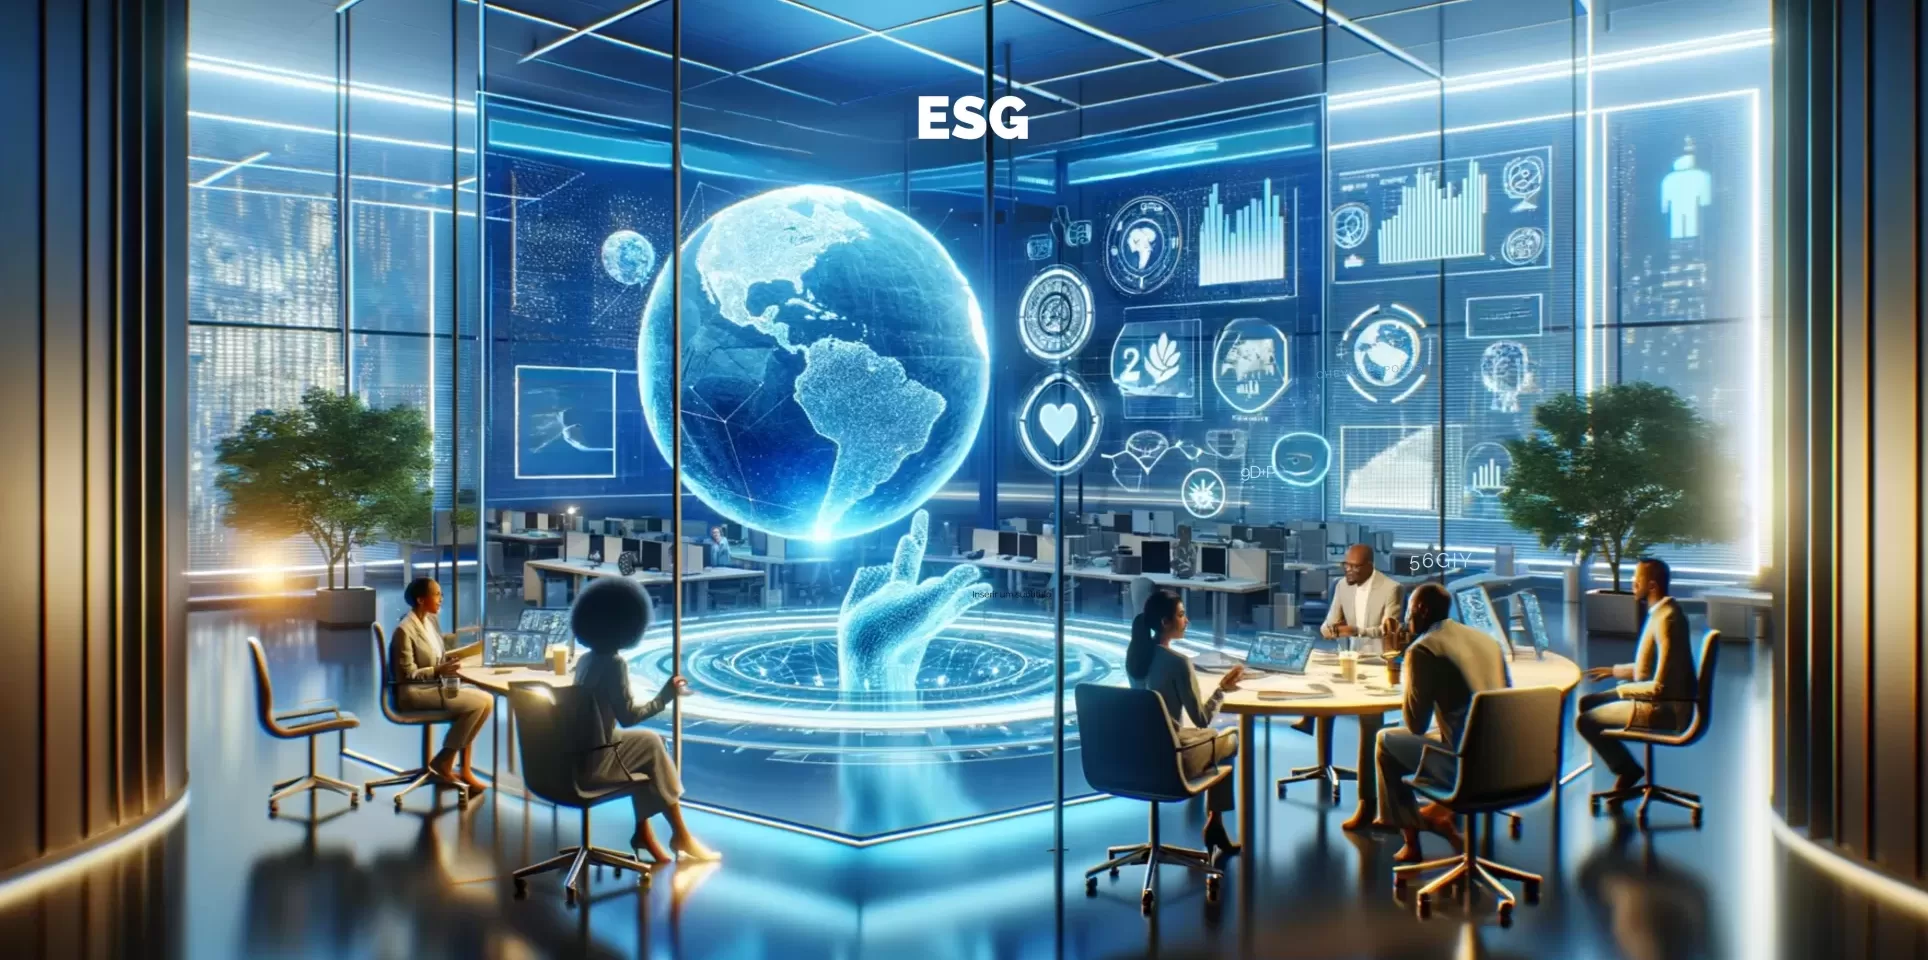 ESG Descomplicado: Significado, Benefícios e Implementação Efetiva